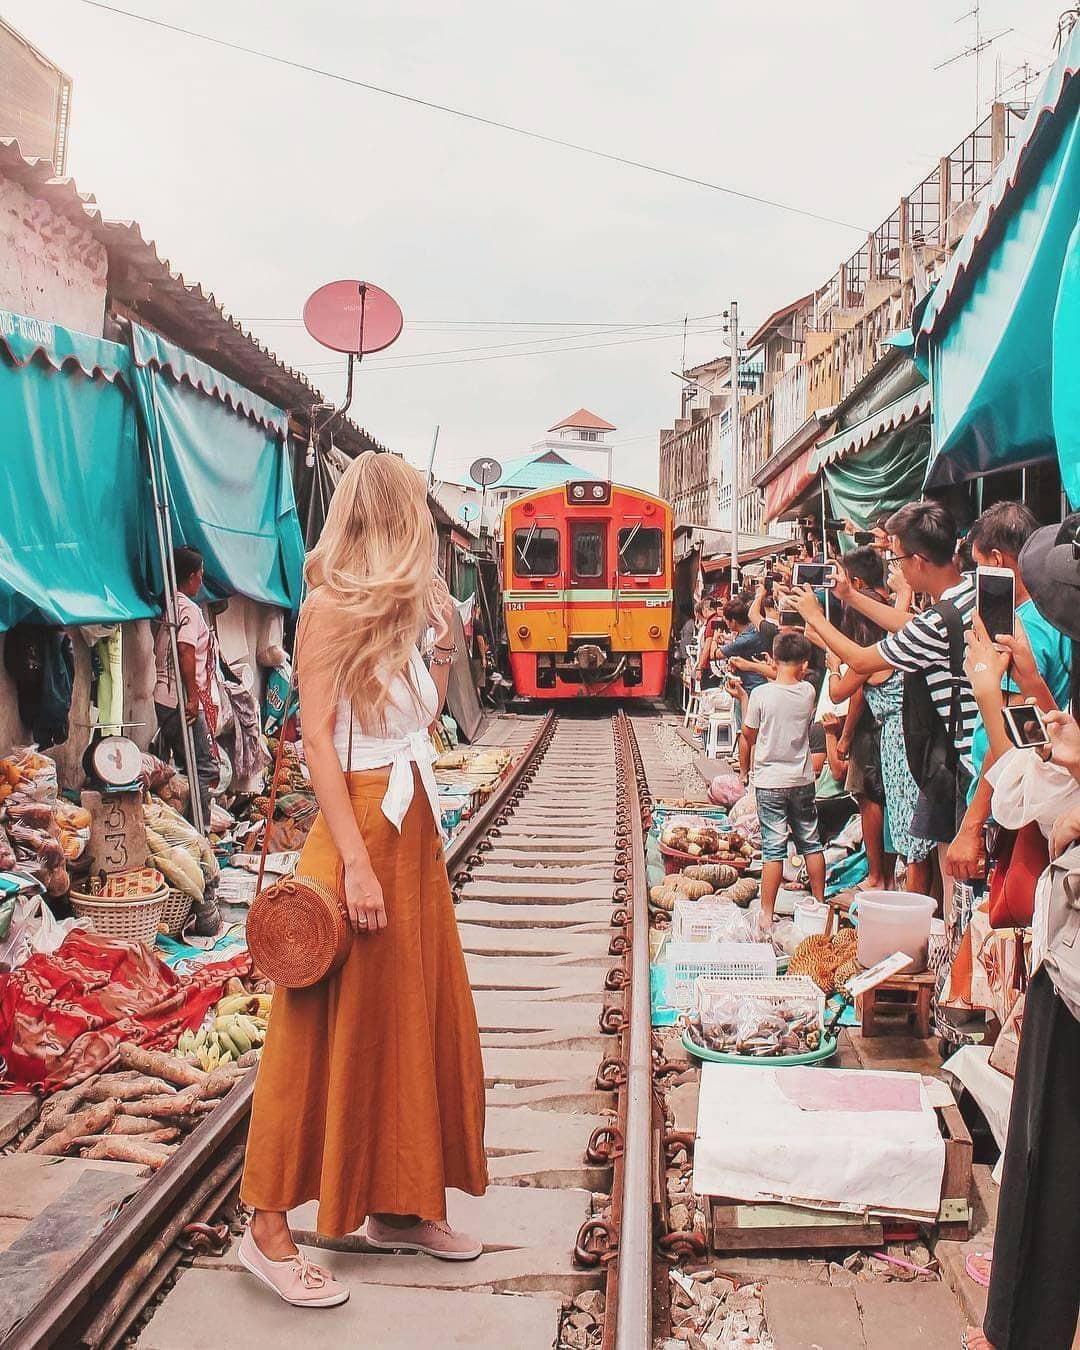 Đi chợ cảm giác mạnh ở chợ đường tàu Maeklong, Bangkok - Ảnh 6